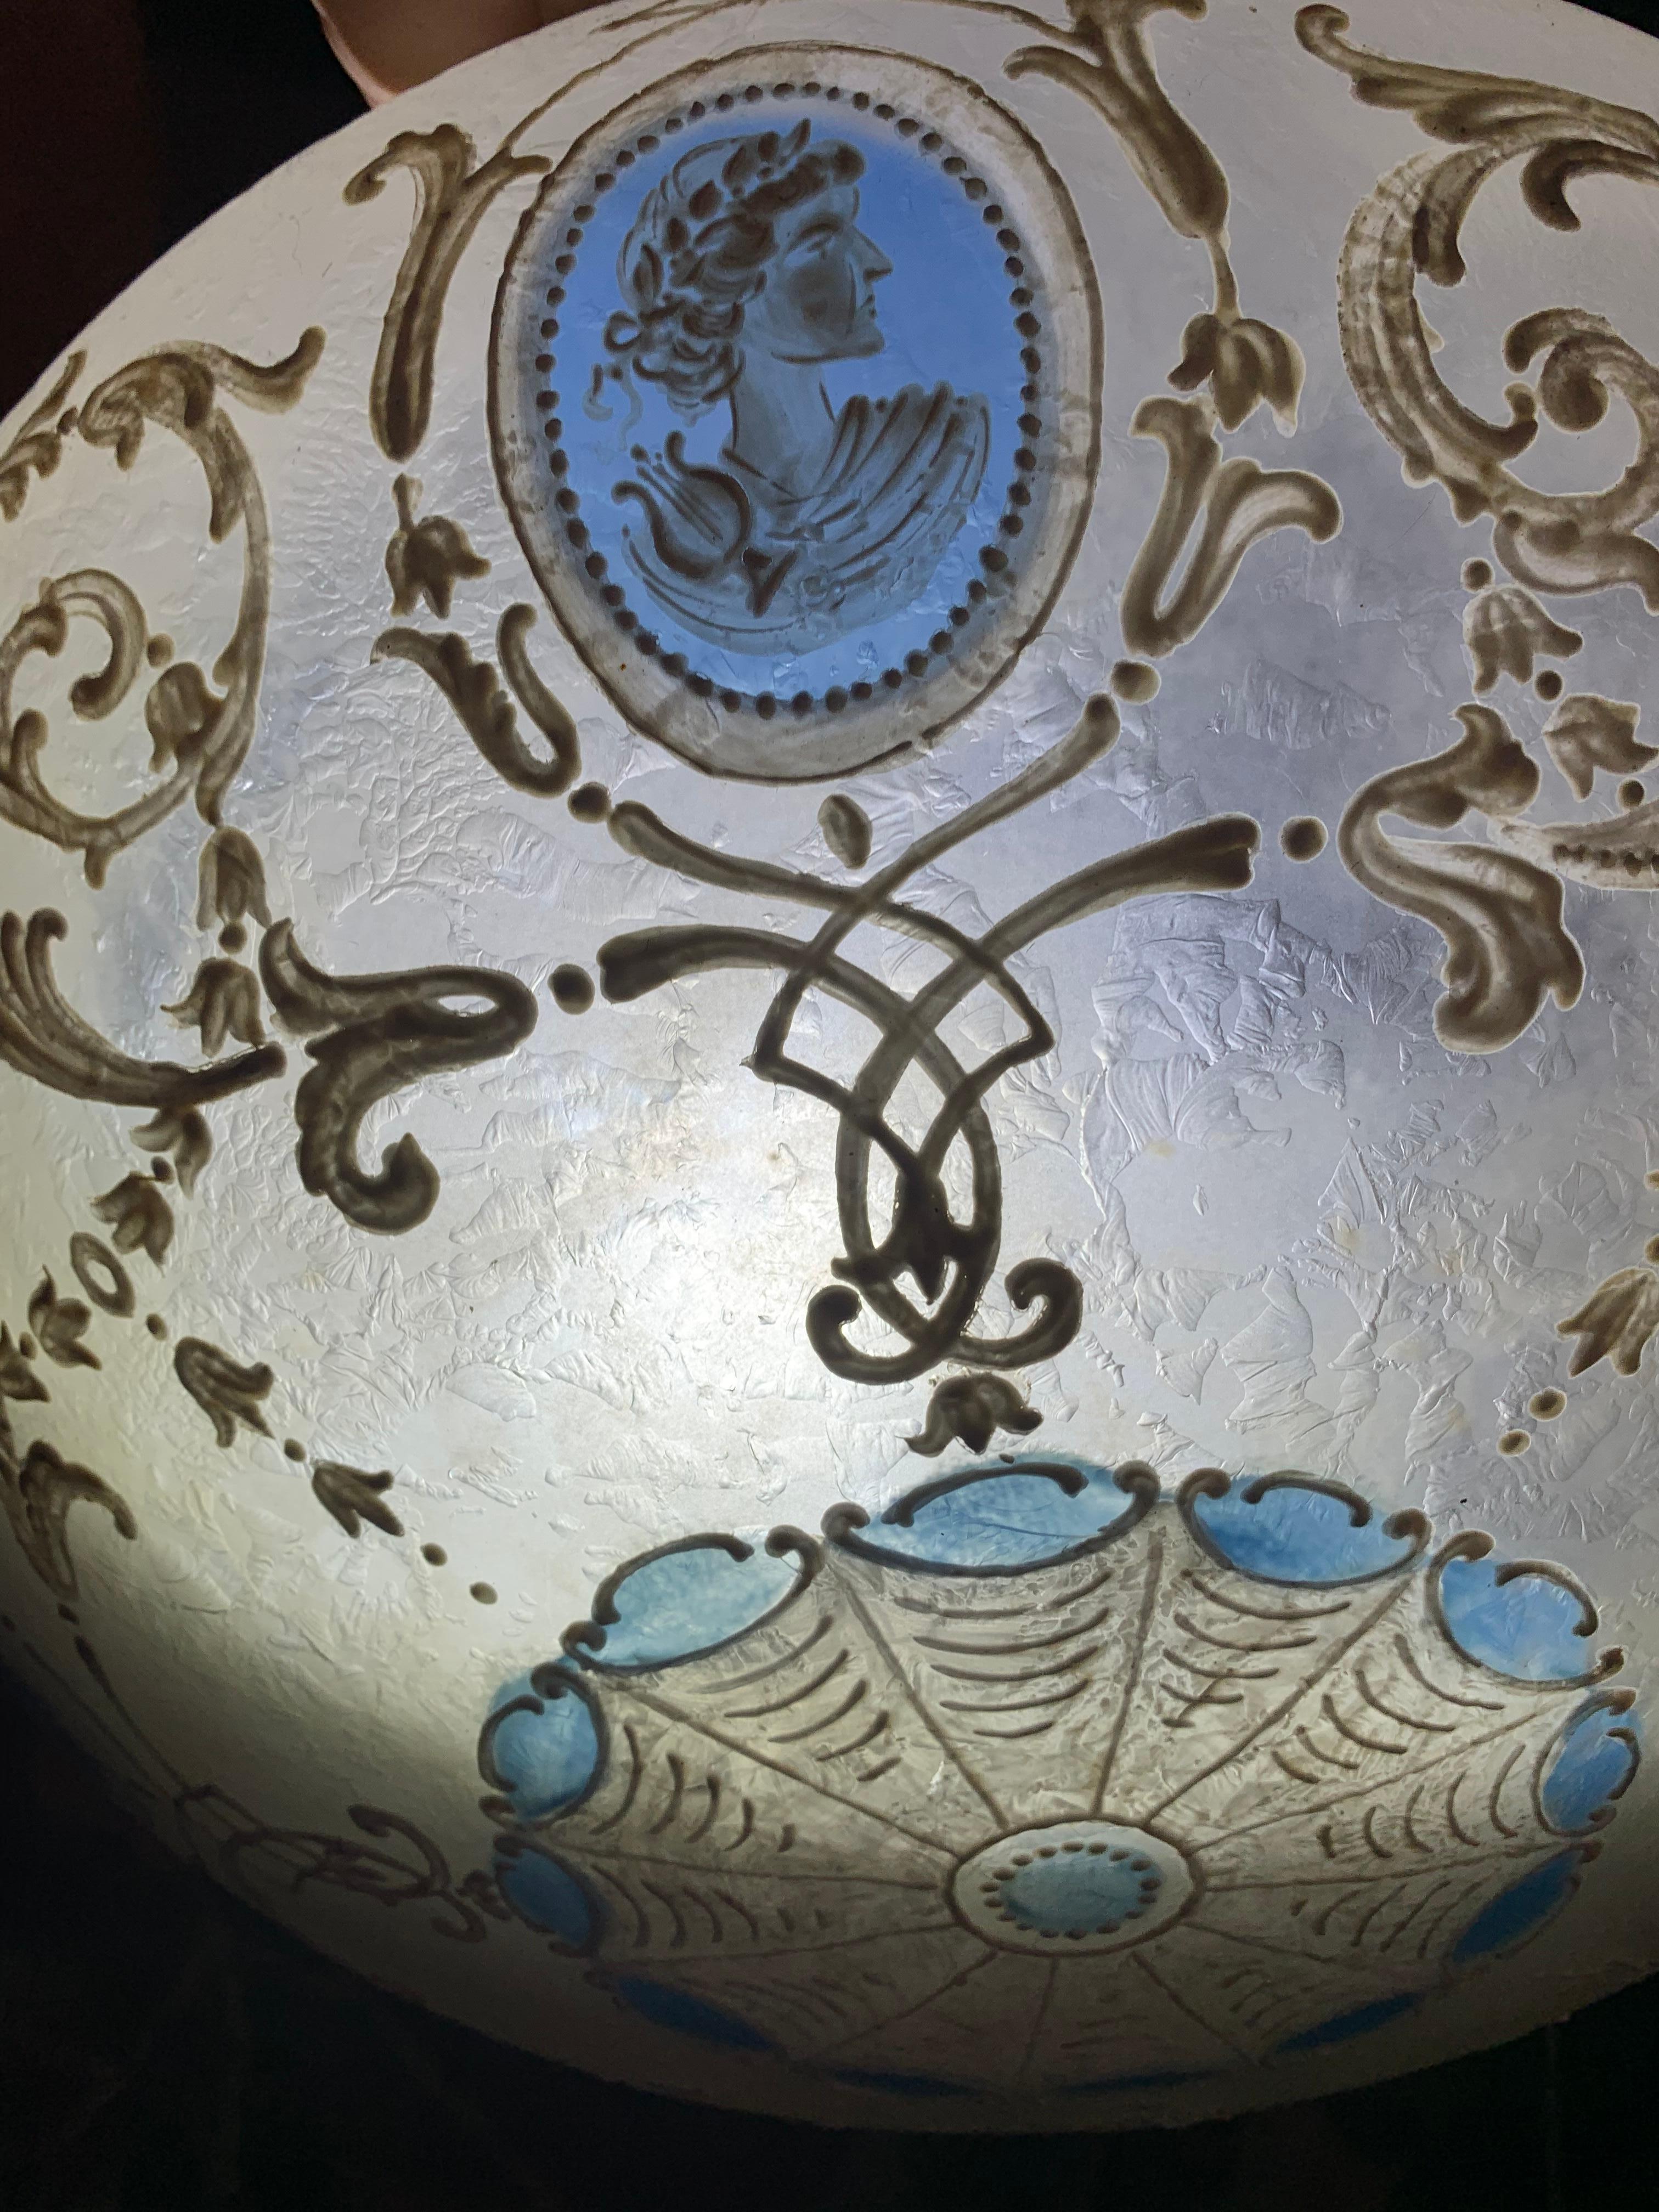 Lustre néo-classique bleu wedgewood peint à la main, années 1920.
Lustre de plafond avec des chaînes en laiton et une fixation présentant une décoration Wedgwood avec un contour en émail blanc à l'extérieur. Abat-jour de Vienne, signé.
Provenance :